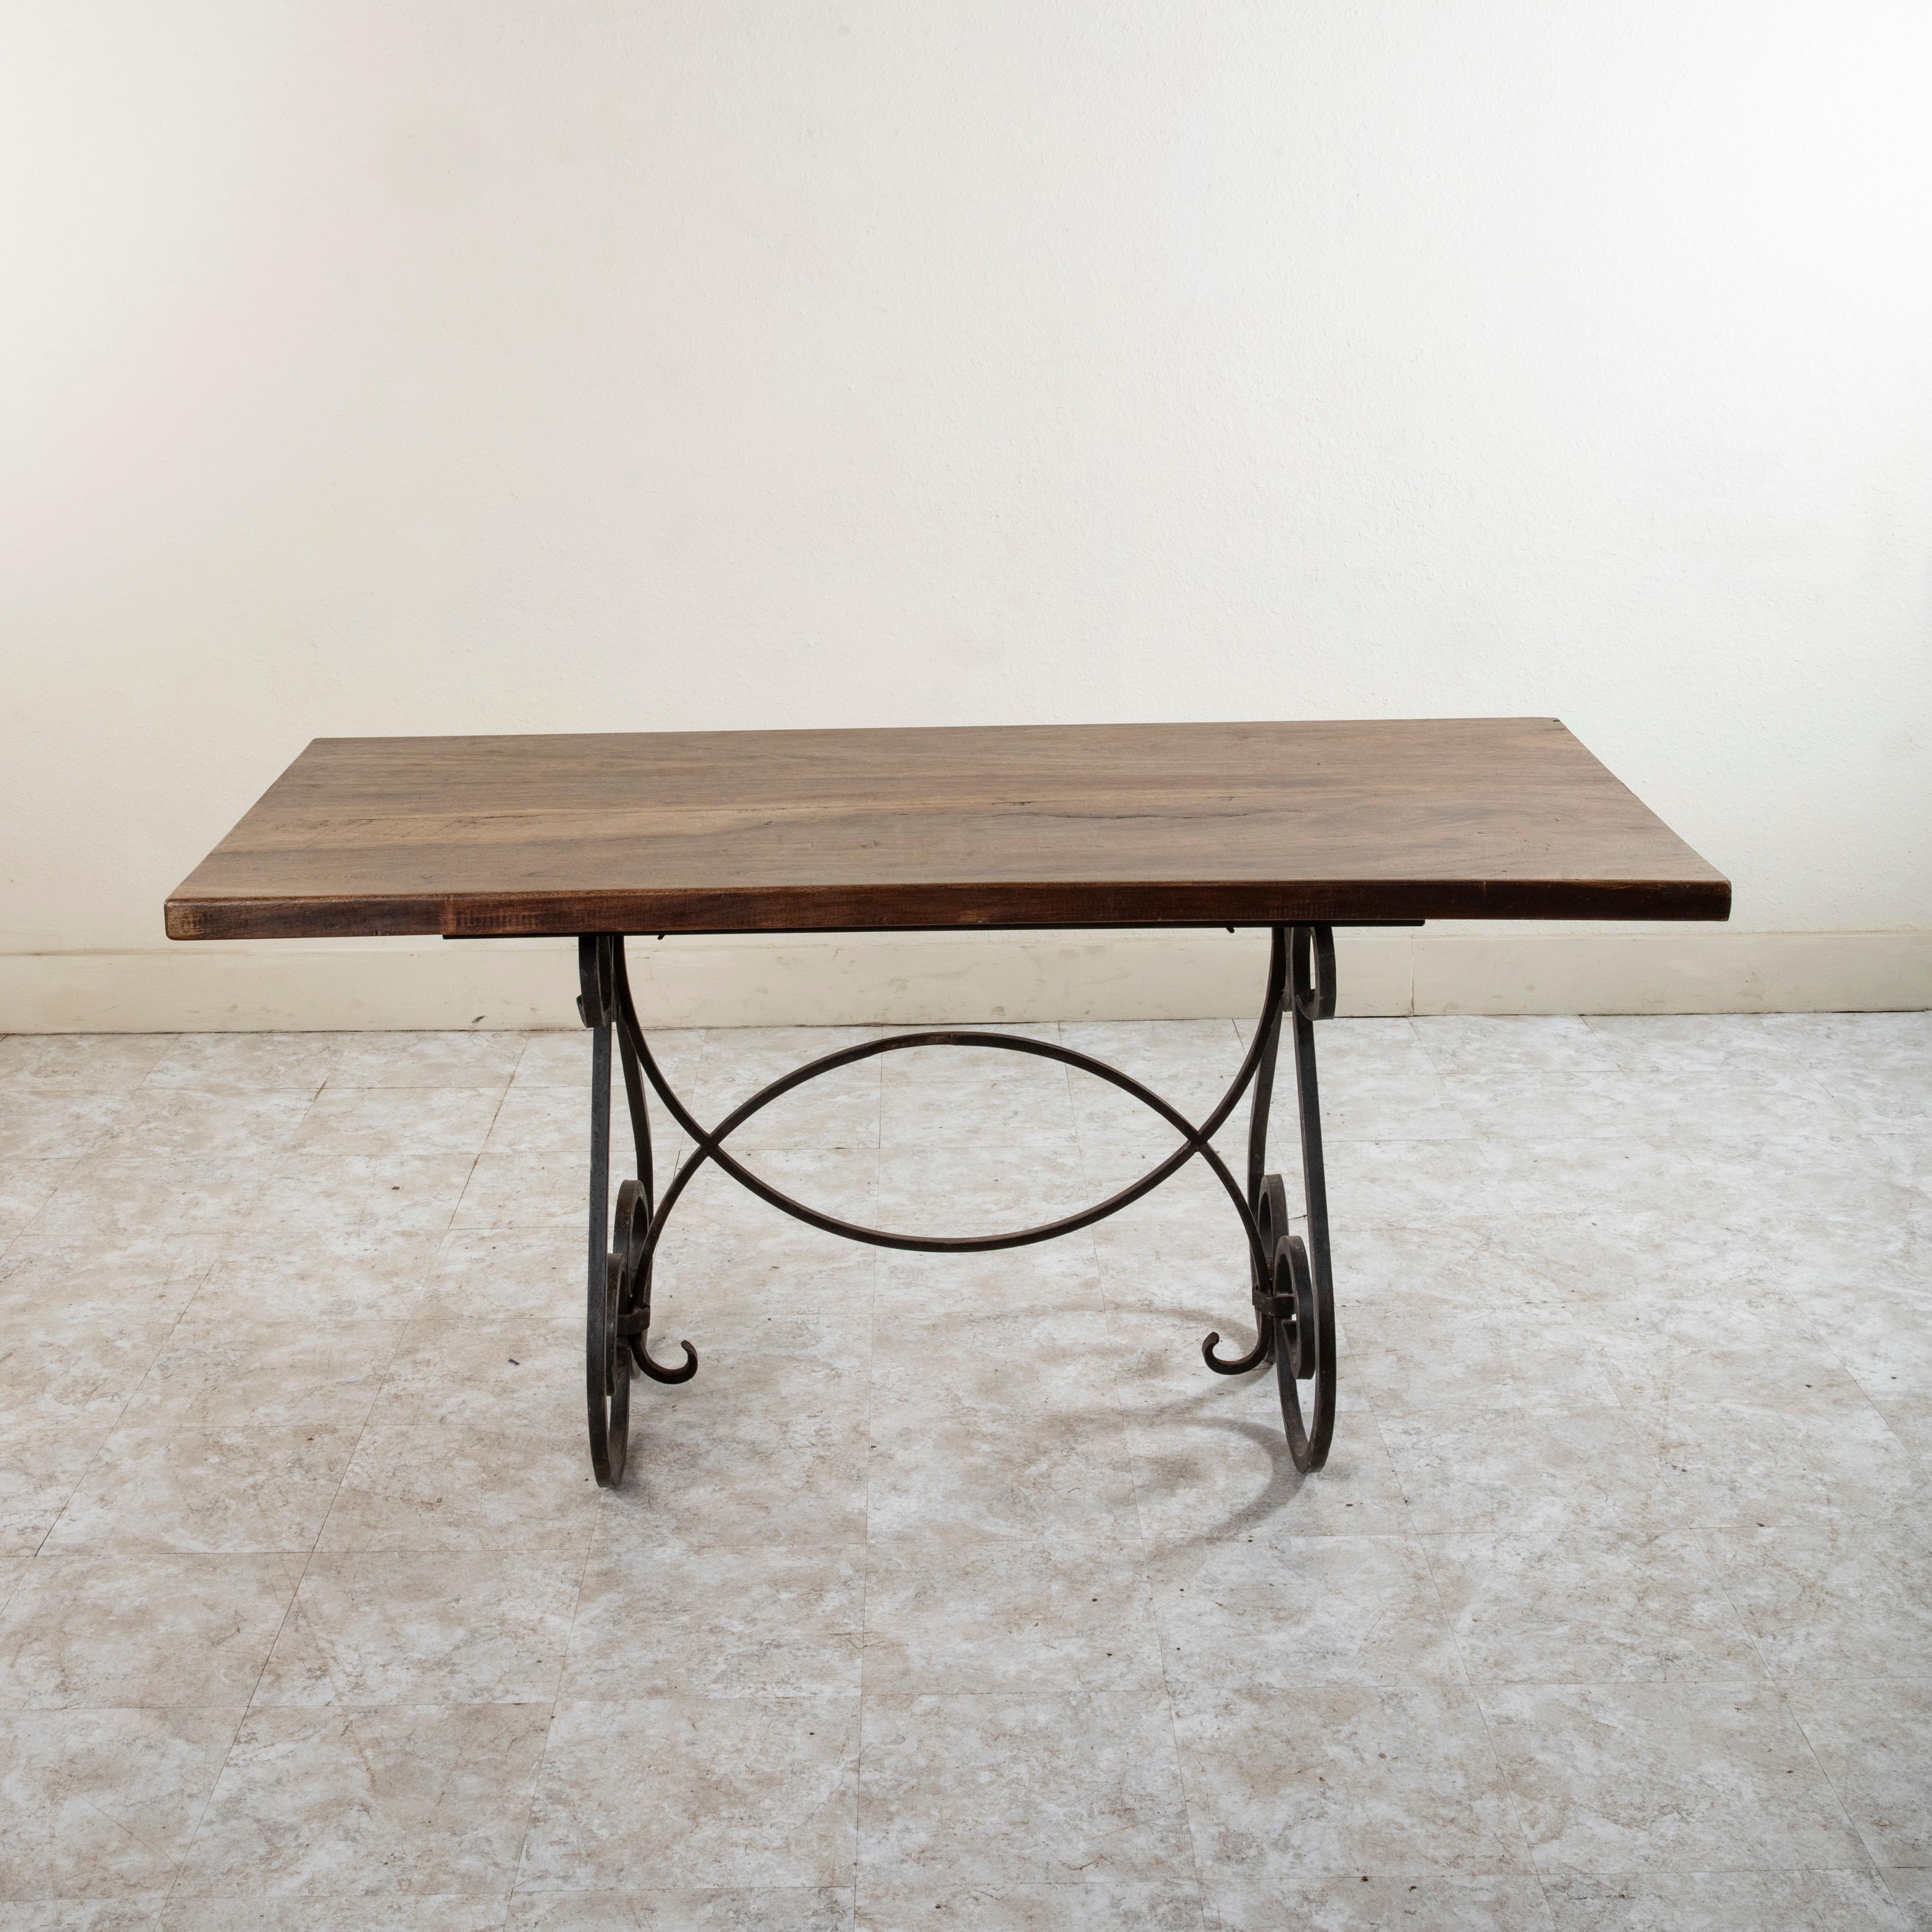 Cette table artisanale française du milieu du vingtième siècle est dotée d'un plateau en noyer massif de 1,75 pouce d'épaisseur, fabriqué à partir de deux planches de bois. Le plateau de la table repose sur une base en fer avec des pieds à volutes à